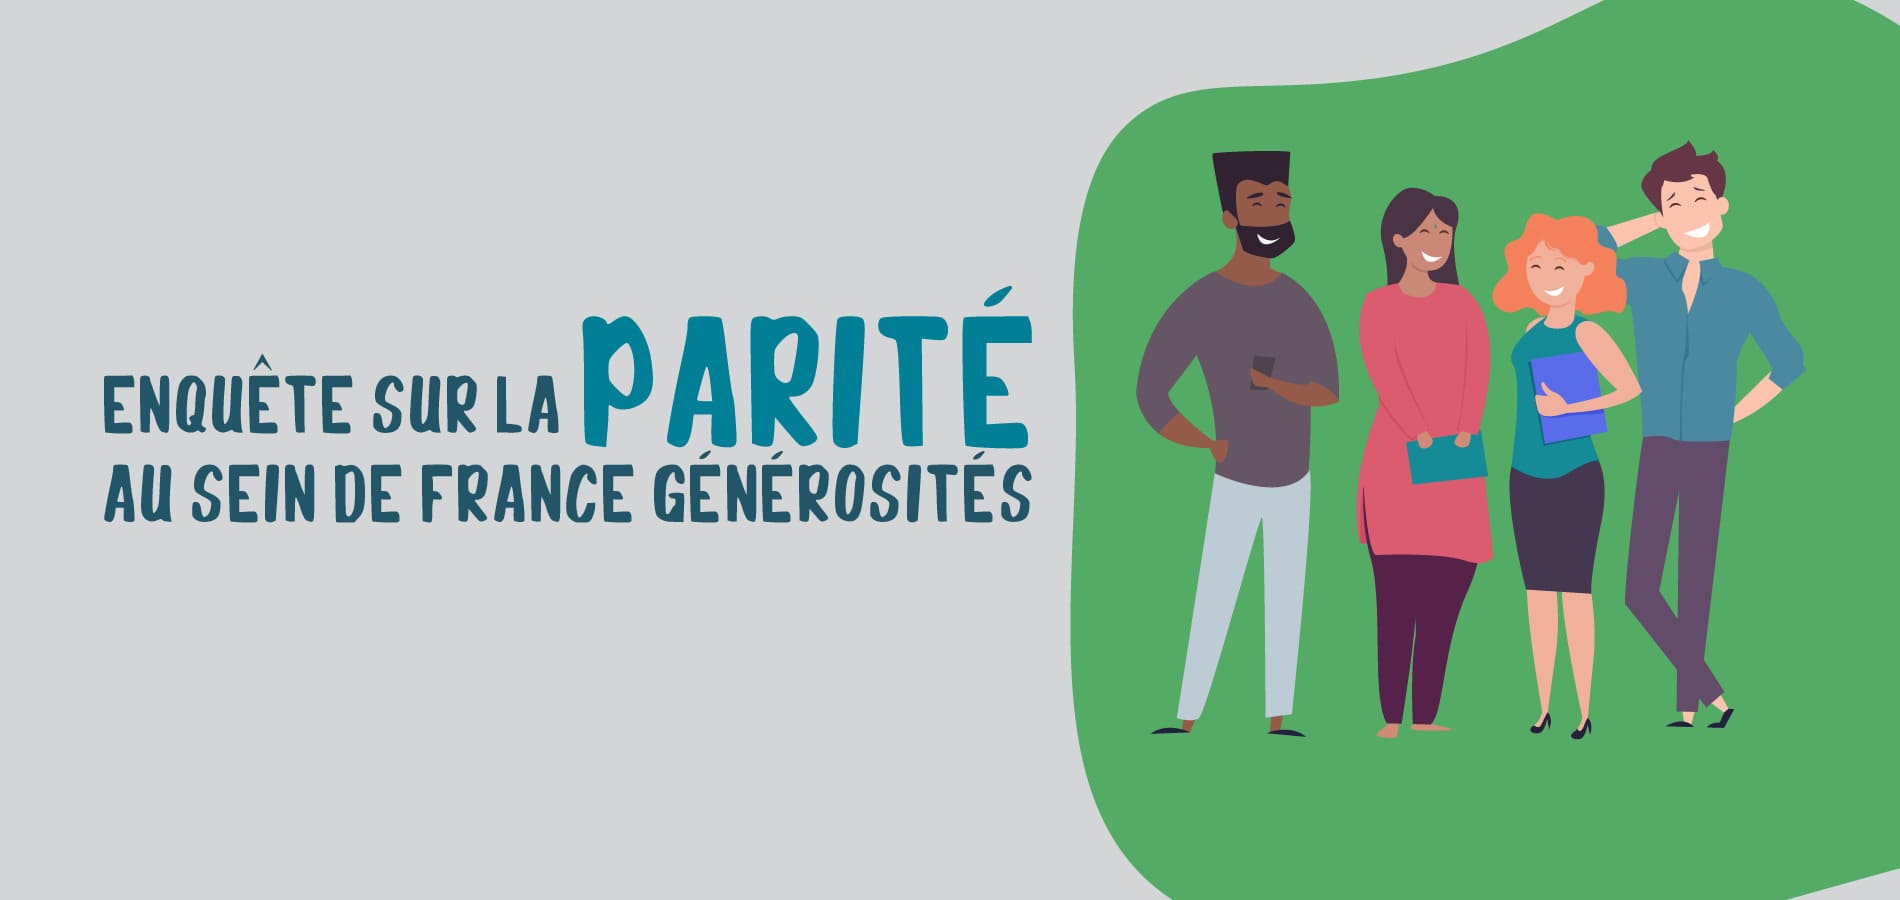 image étude sur la parité chez les membres de France générosités